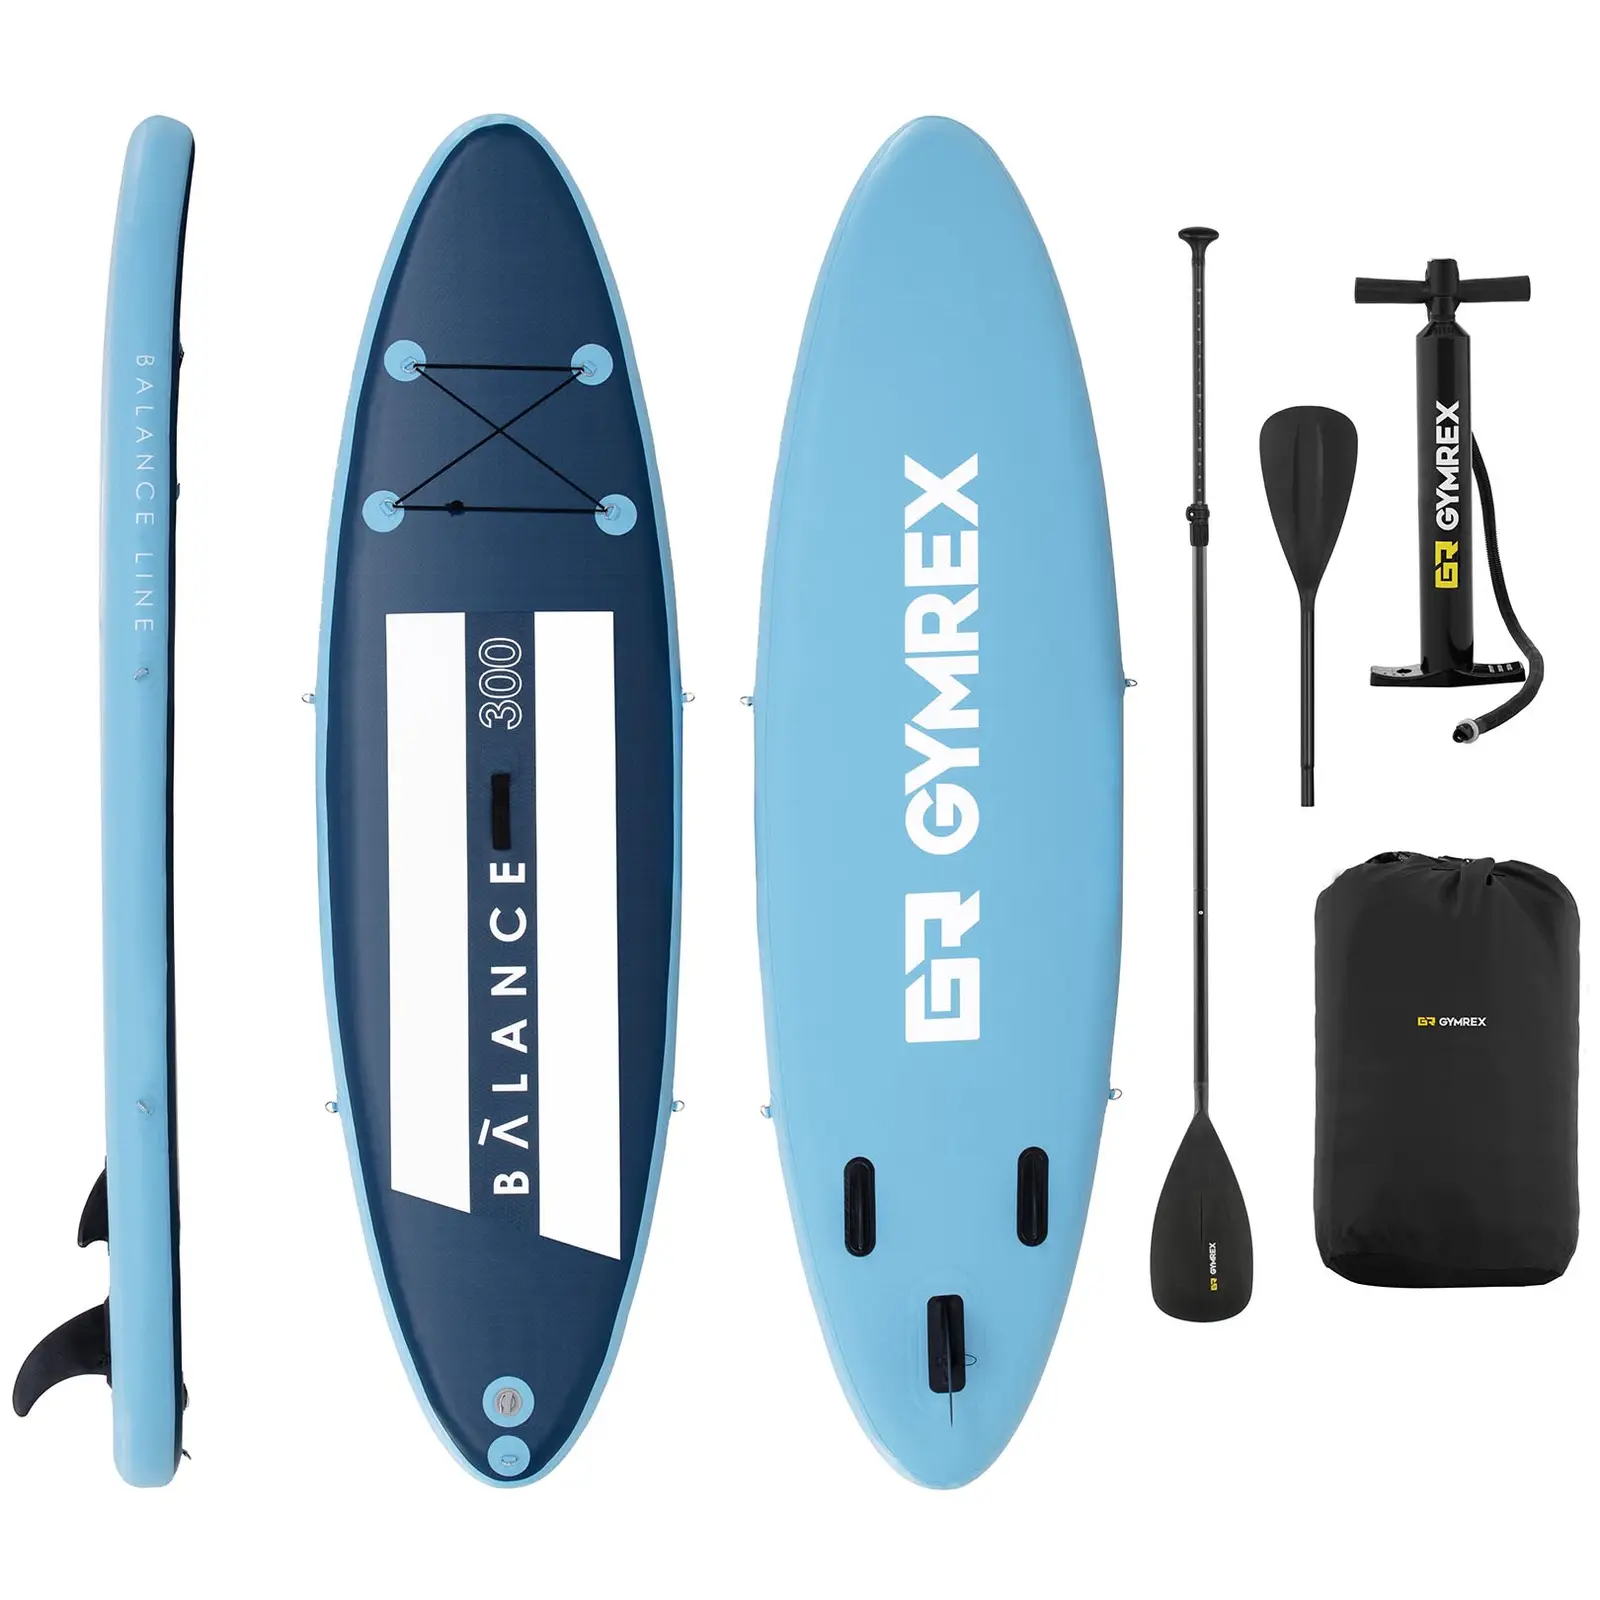 Paddle-board - 135 kg - blå/marineblå - sæt inkl. paddel og tilbehør